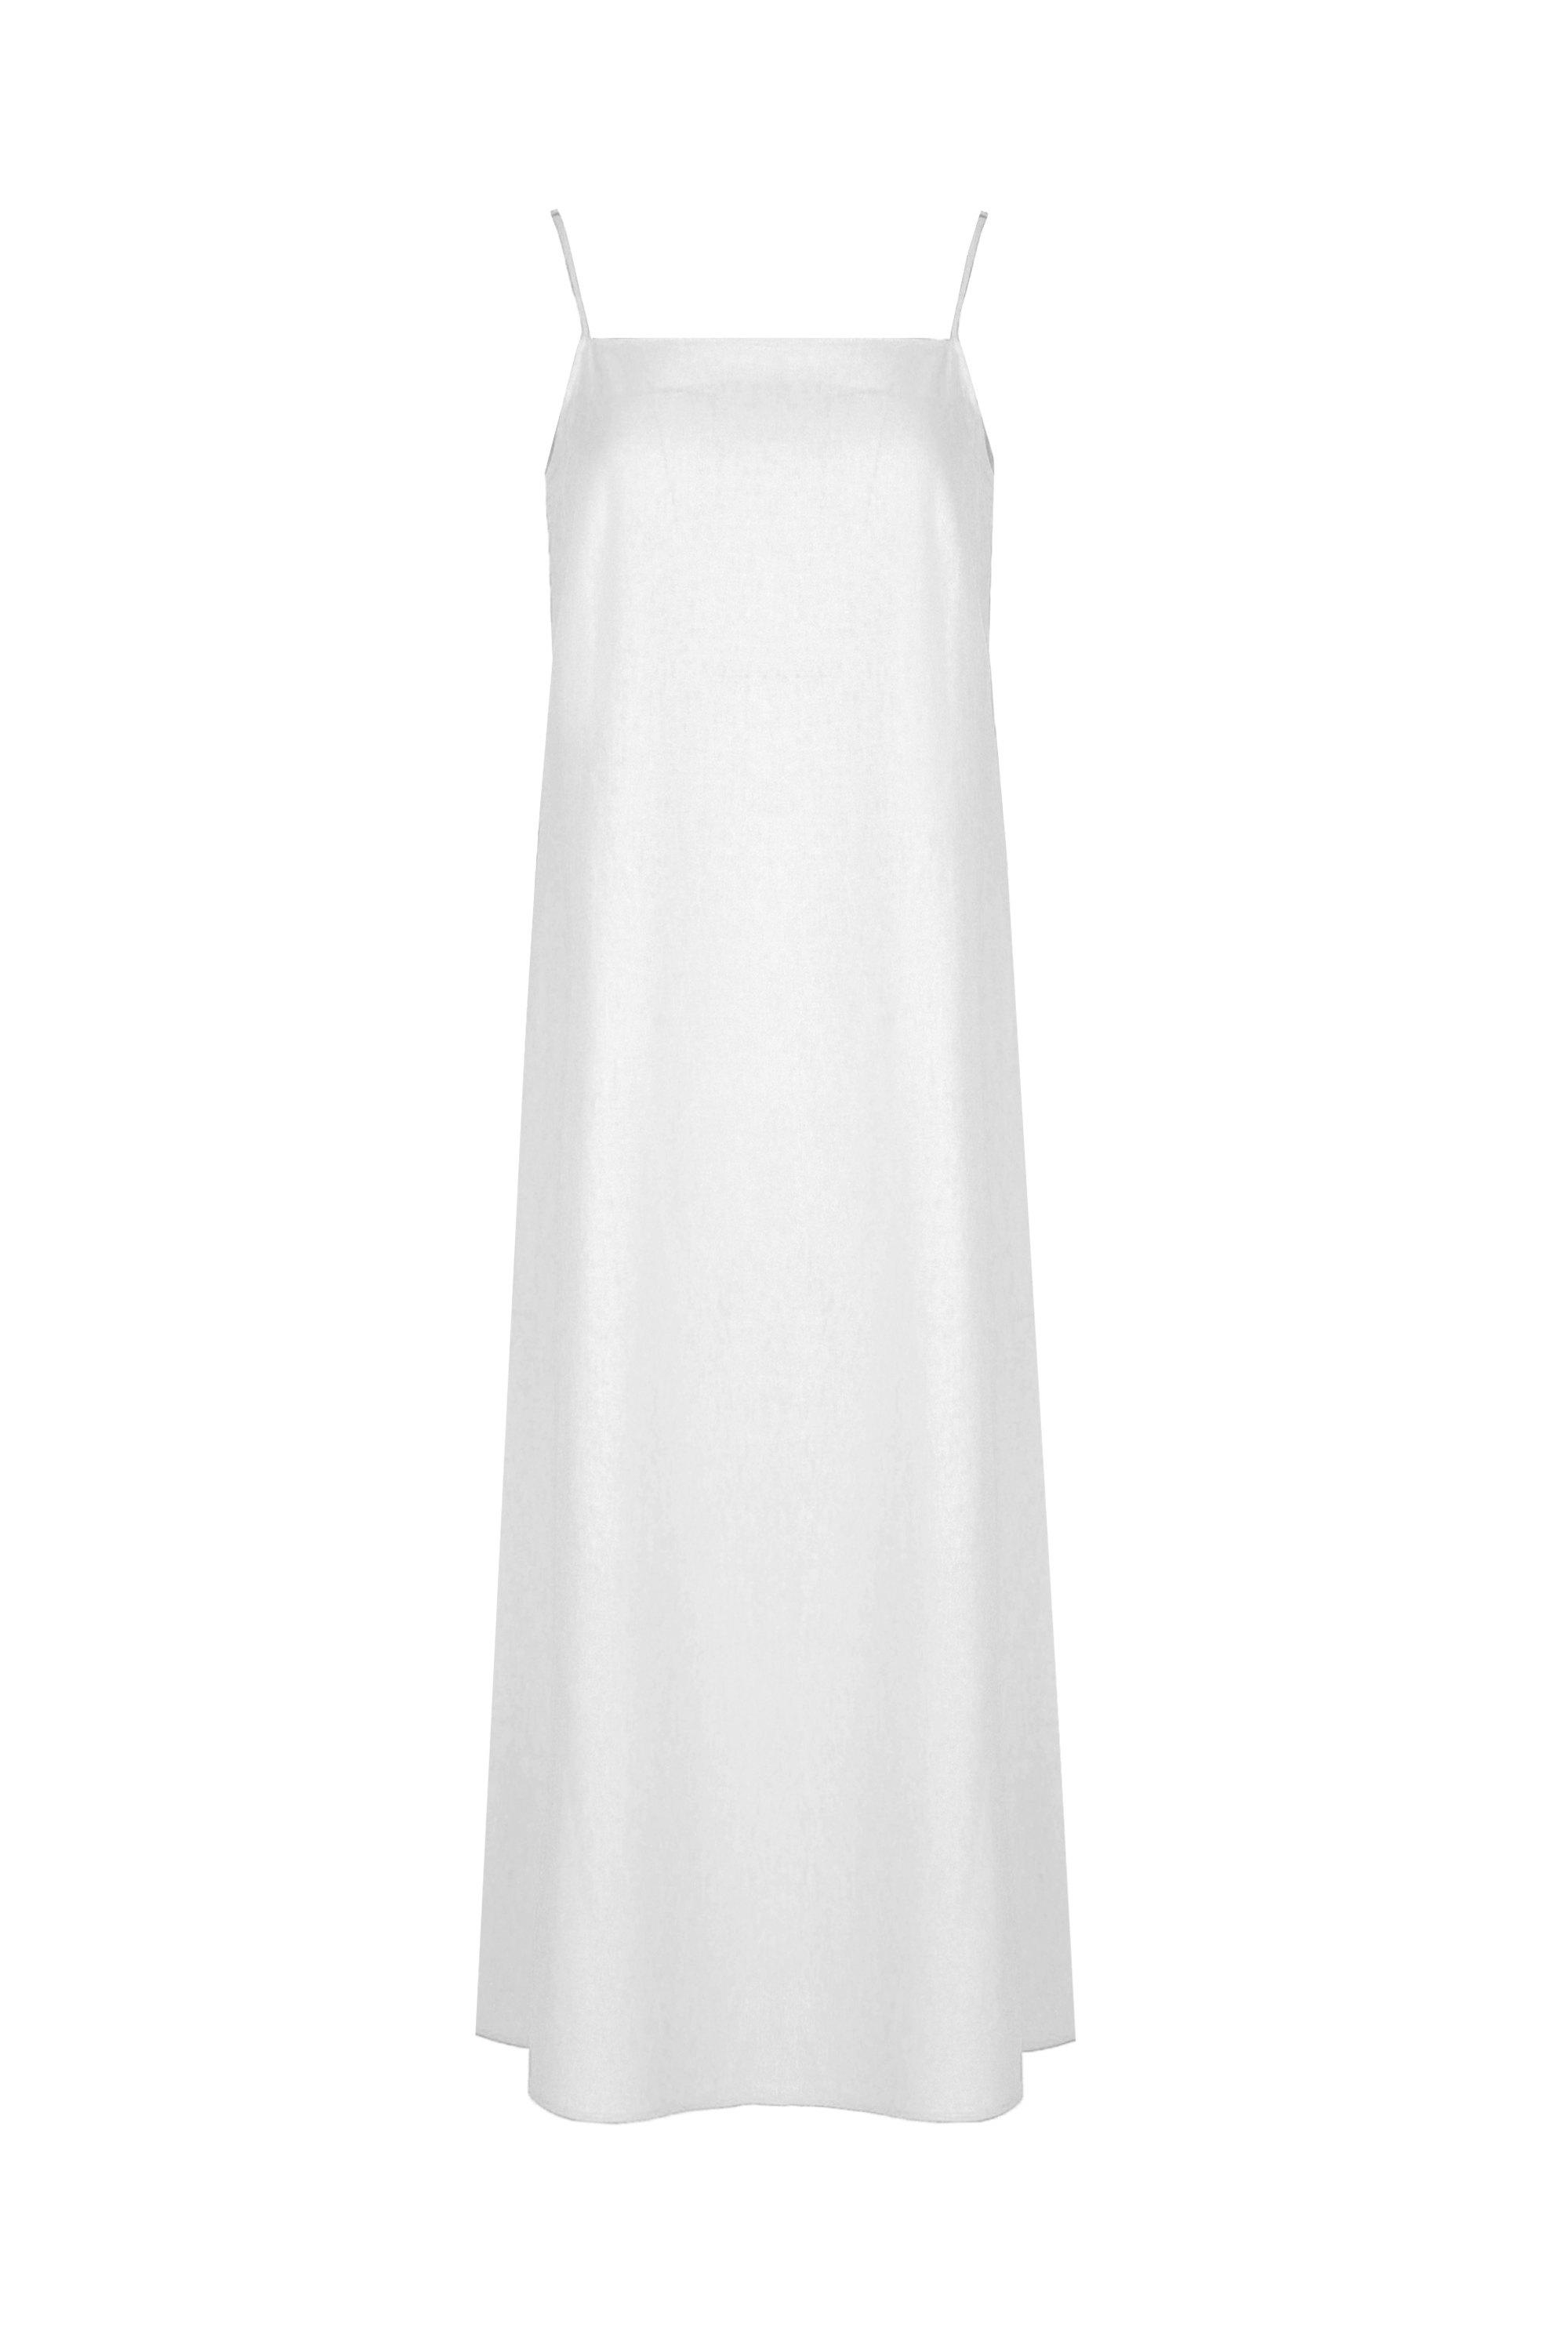 Платье женское 5К-12506-1